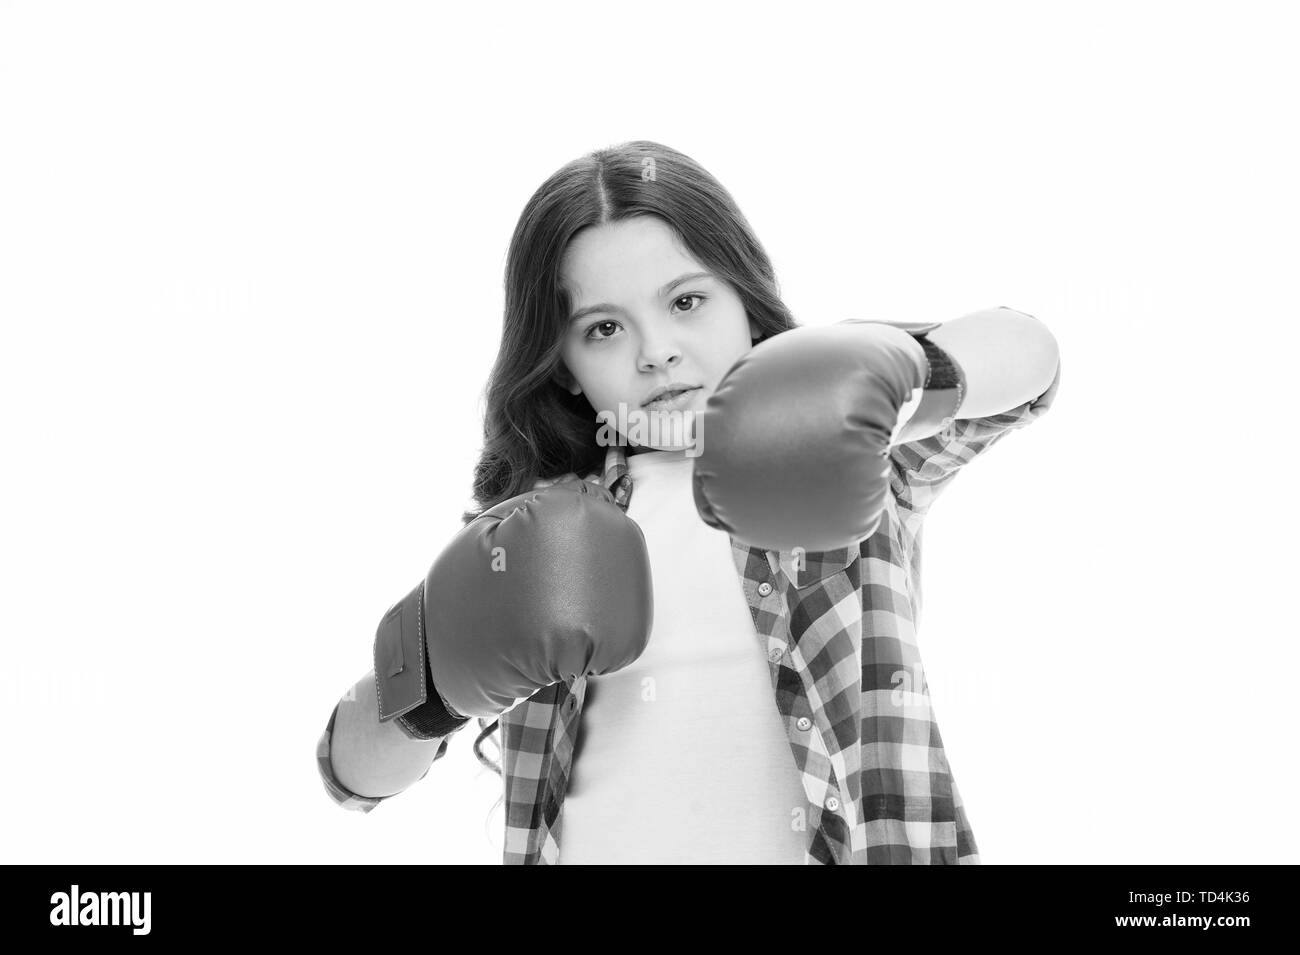 Girl Power Konzept. Kind Boxhandschuhe isoliert weiß. Kind Boxer verteidigen sich. Sportliche Aktivität. Boxing Praxis. Feministische Bewegung. Selbst verteidigen. Angriff und Fähigkeiten verteidigen. Sich selbst zu Verteidigen. Stockfoto